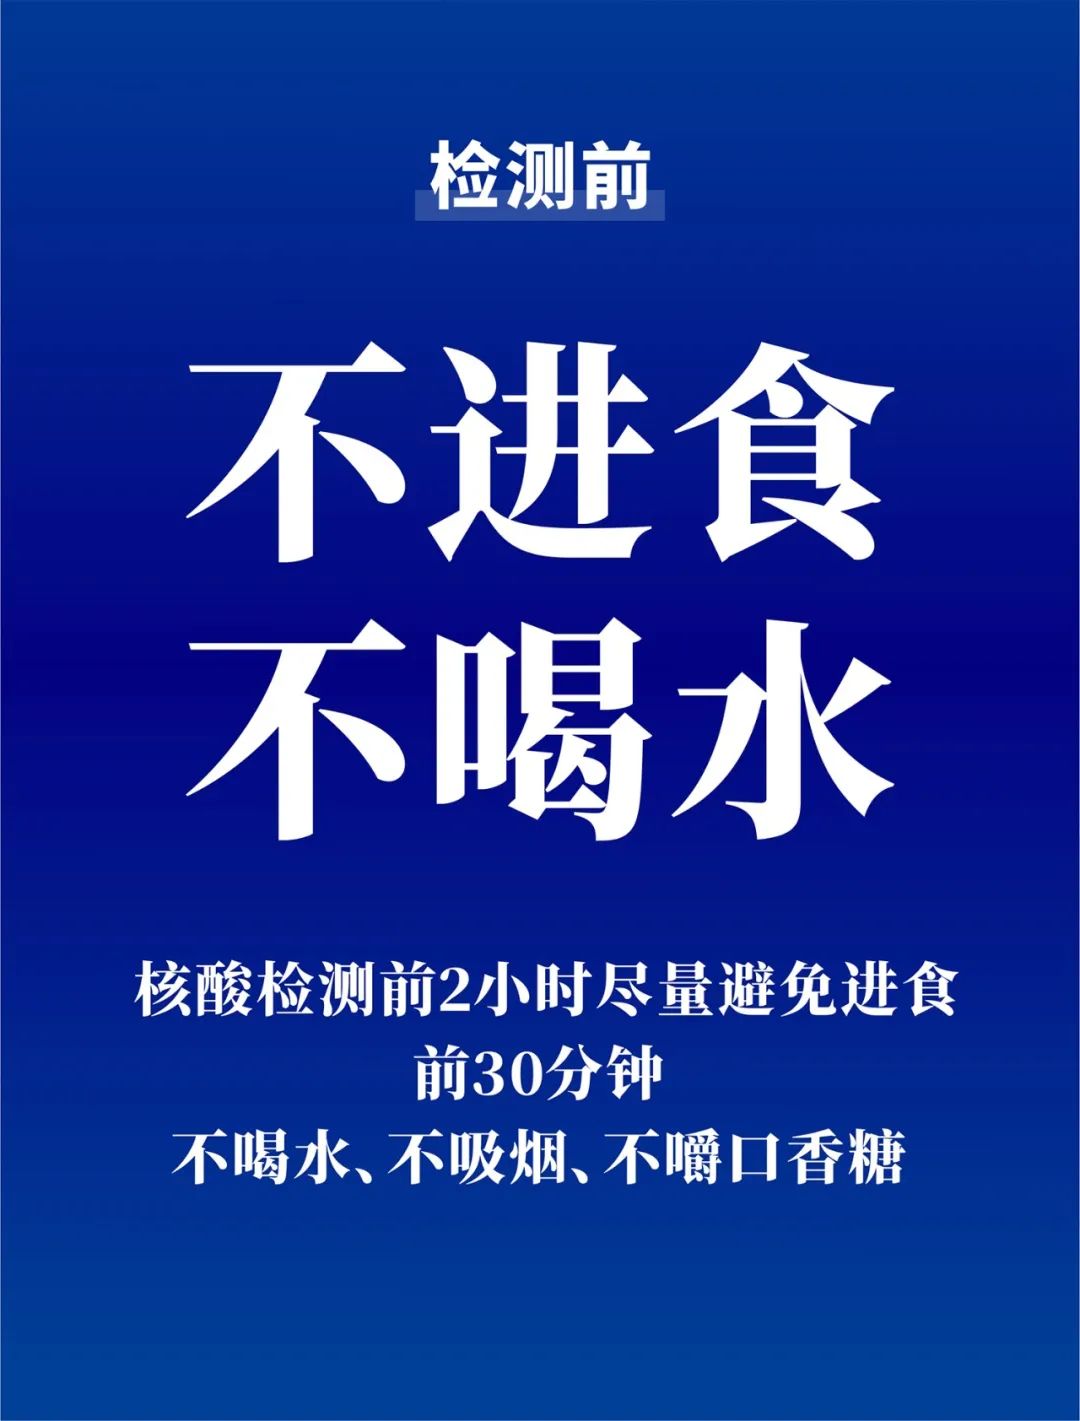 关于第七轮全员核酸检测，徐州市教育局发布最新通知